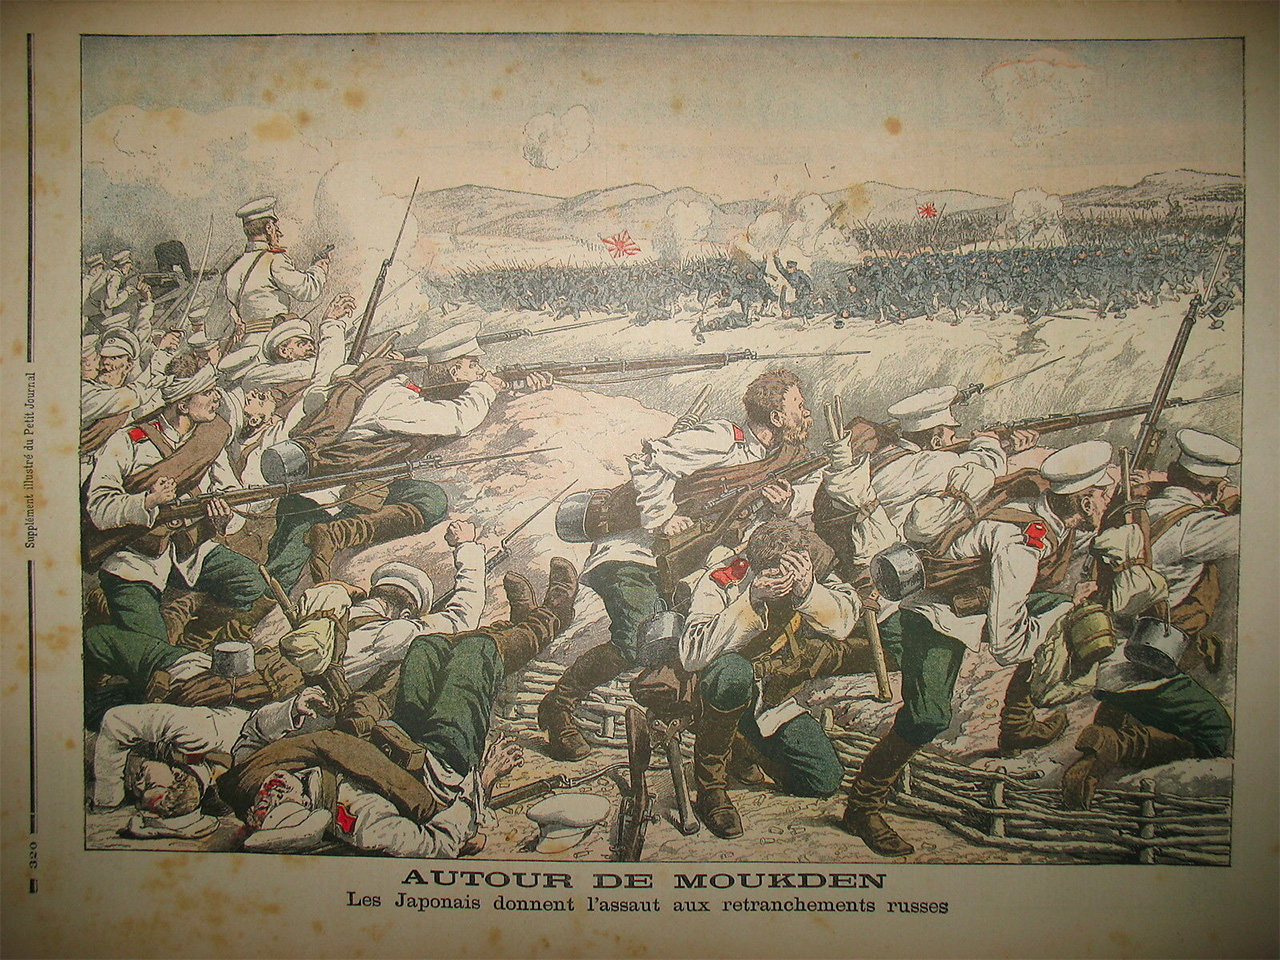 Representación anónima de la batalla de Mukden, última gran batalla terrestre de la guerra ruso-japonesa., que tuvo lugar entre febrero y marzo de 1905. Después de cruentos combates los japoneses lograron tomar por asalto las líneas defensivas de los rusos, que perdieron unos 9.000 hombres.